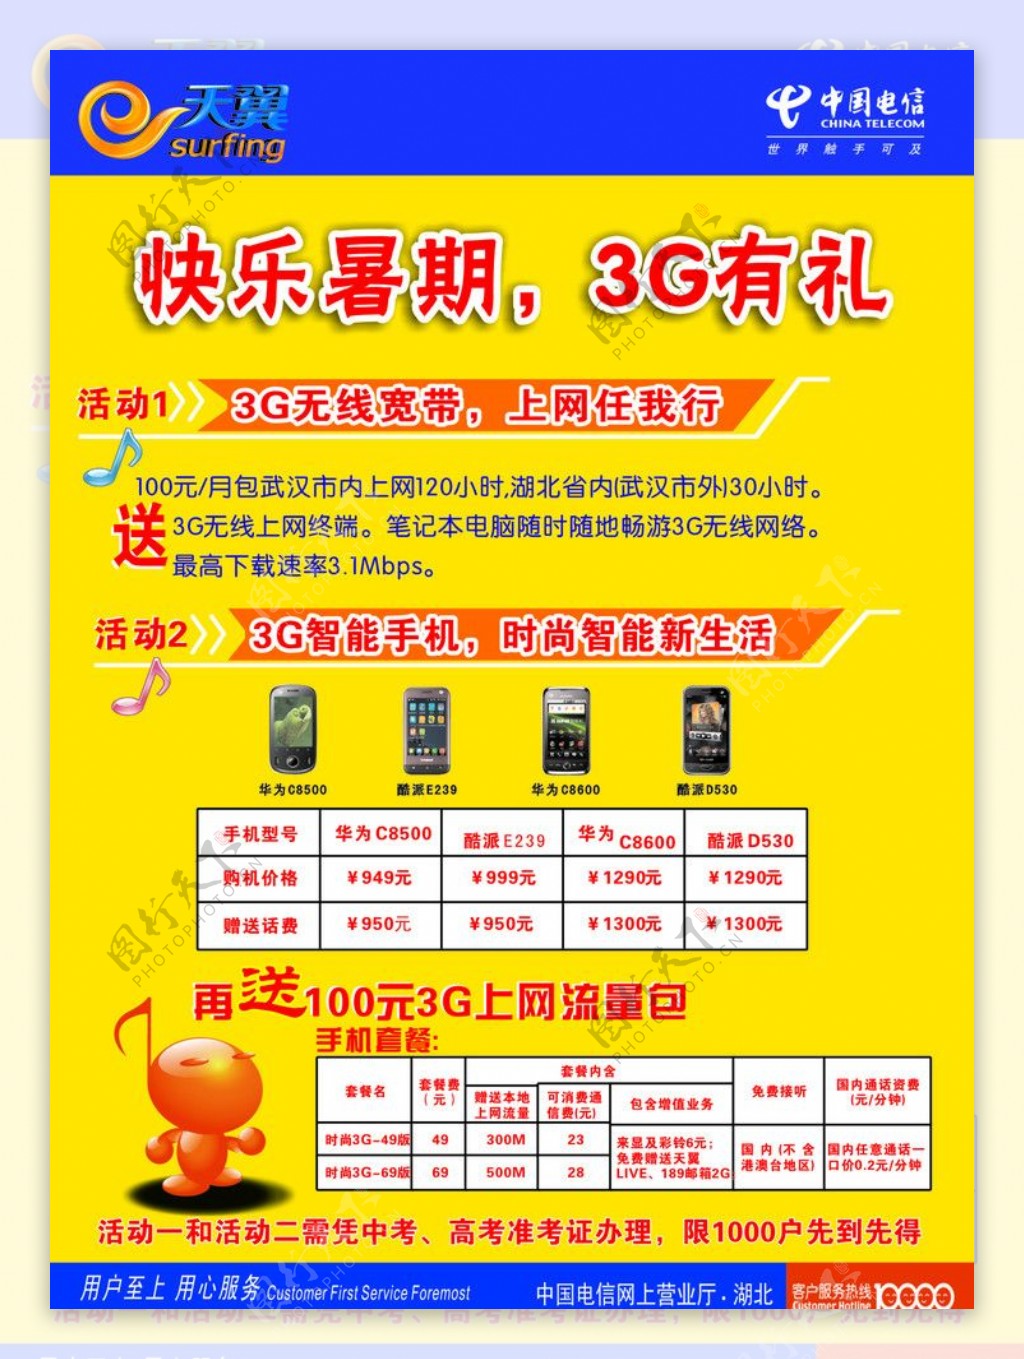 中国电信快乐暑期宣传单图片